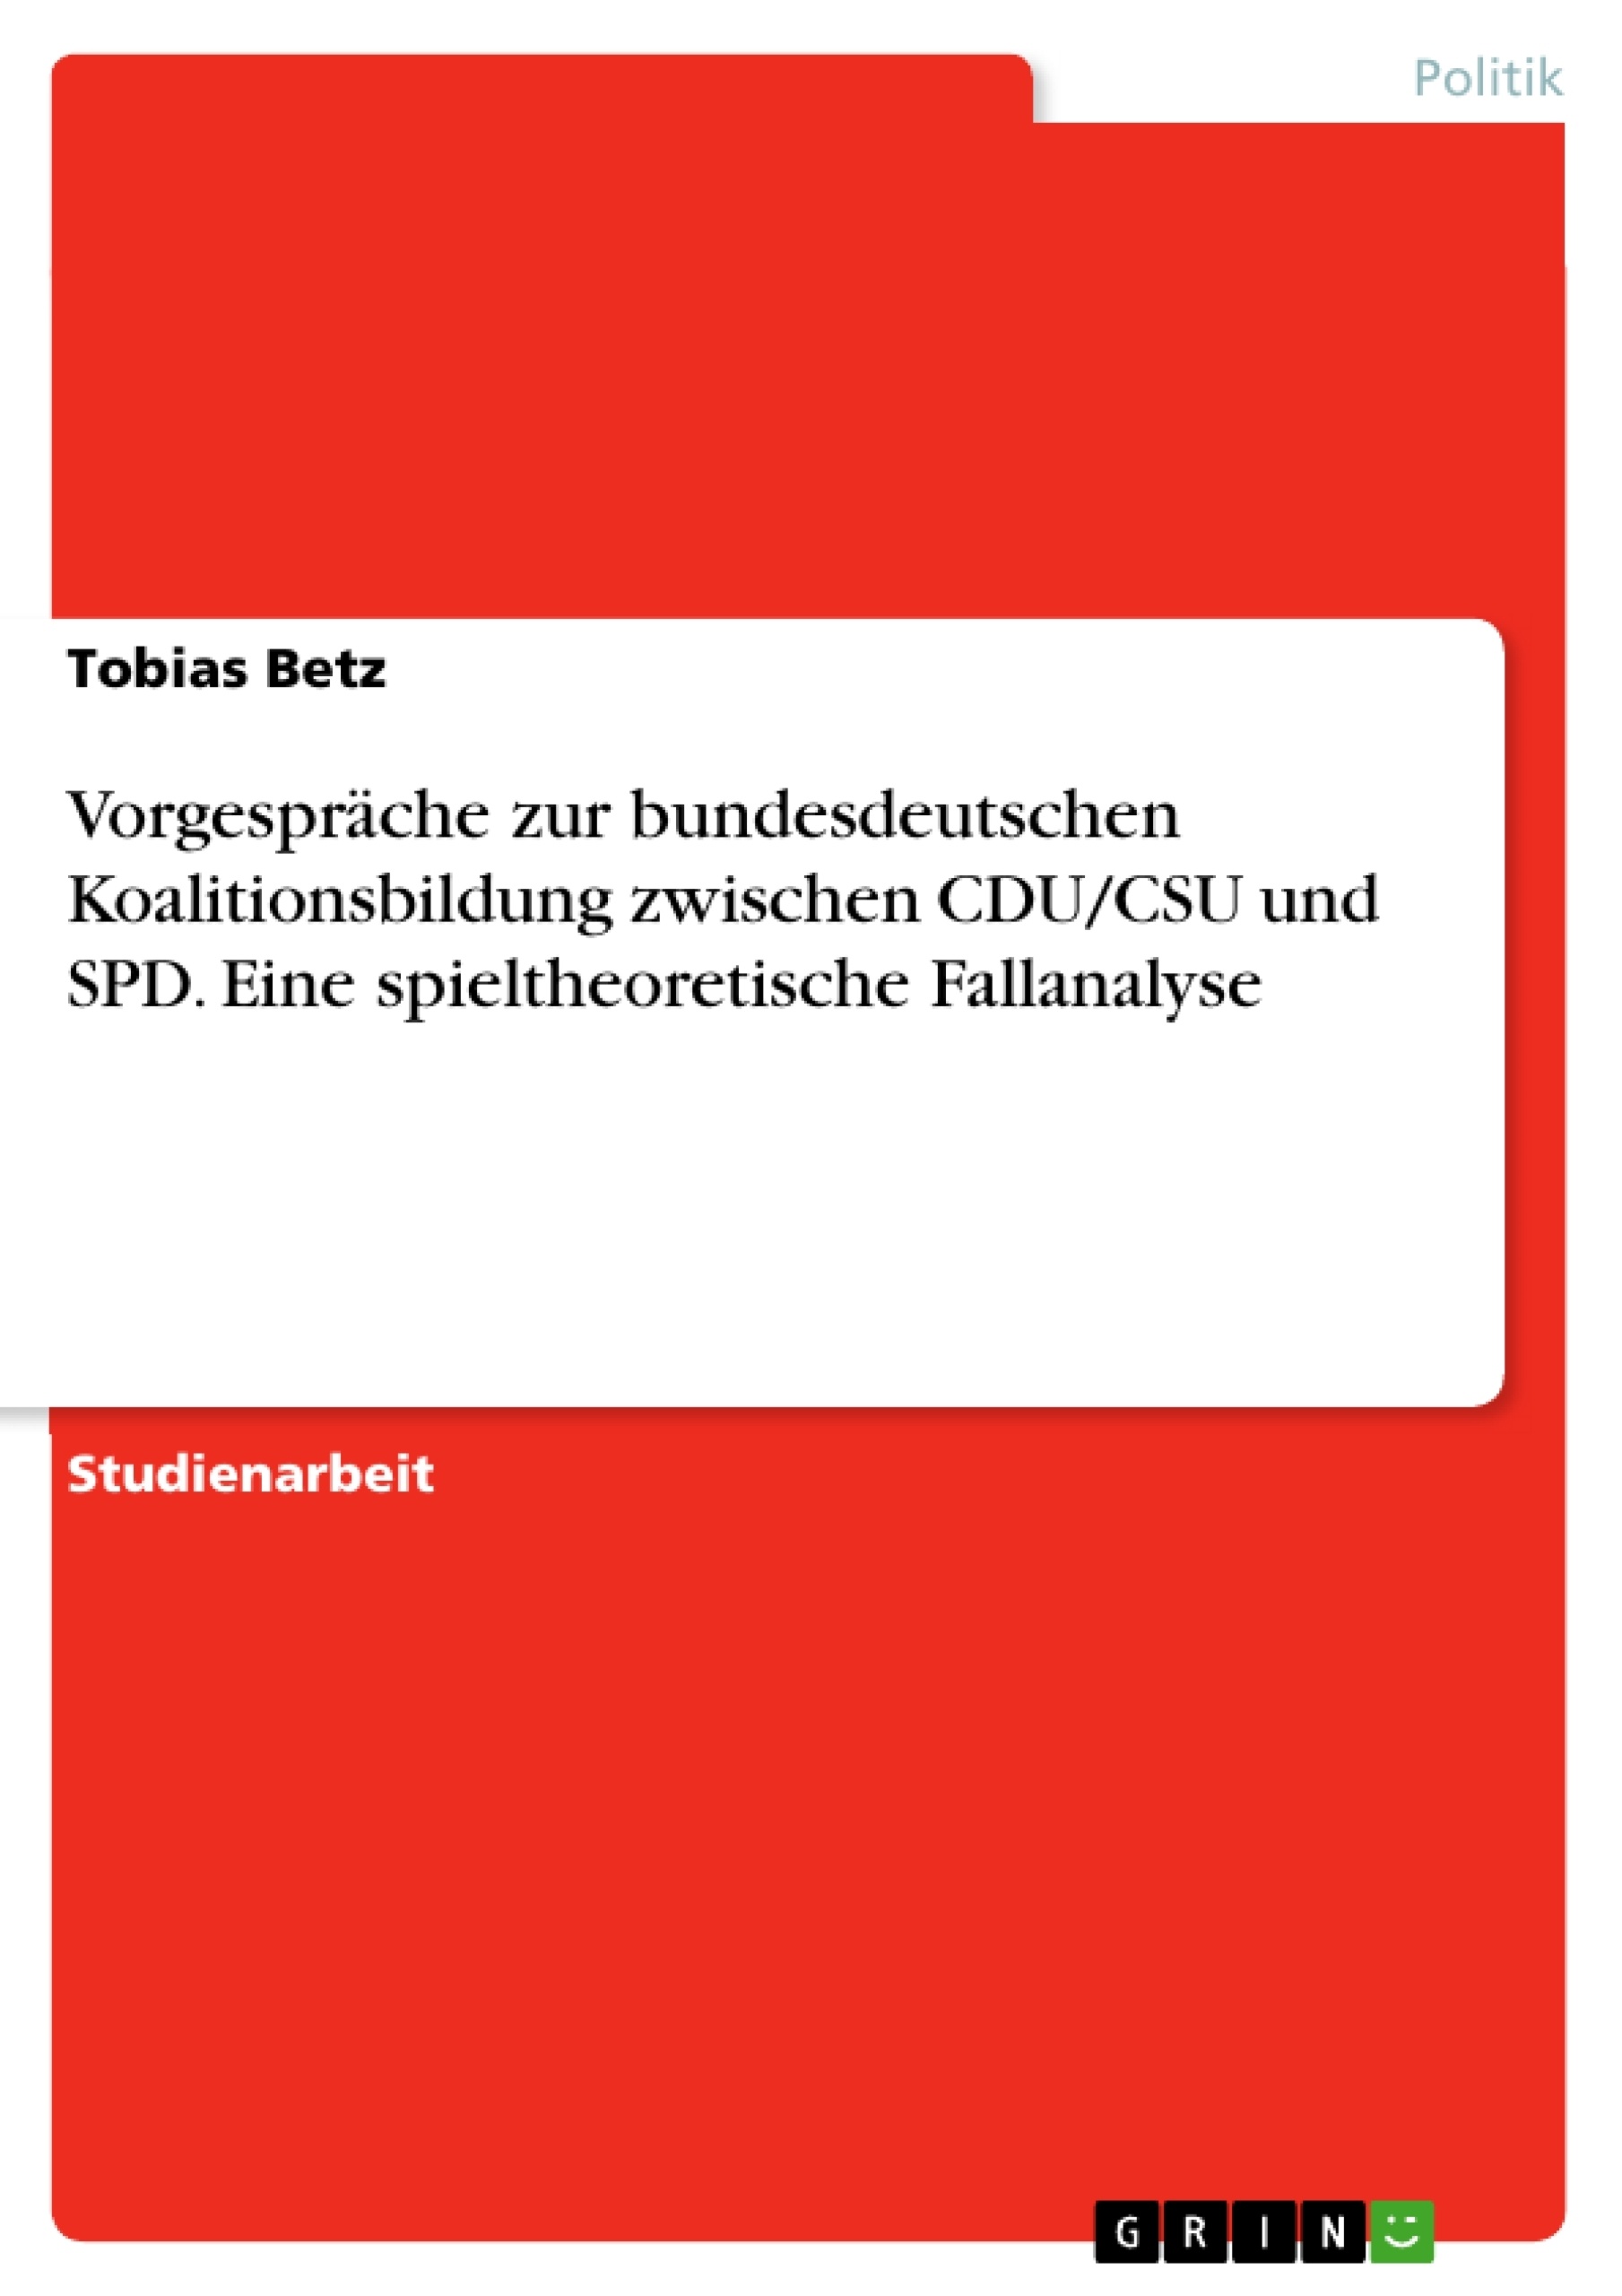 Titel: Vorgespräche zur bundesdeutschen Koalitionsbildung zwischen CDU/CSU und SPD. Eine spieltheoretische Fallanalyse